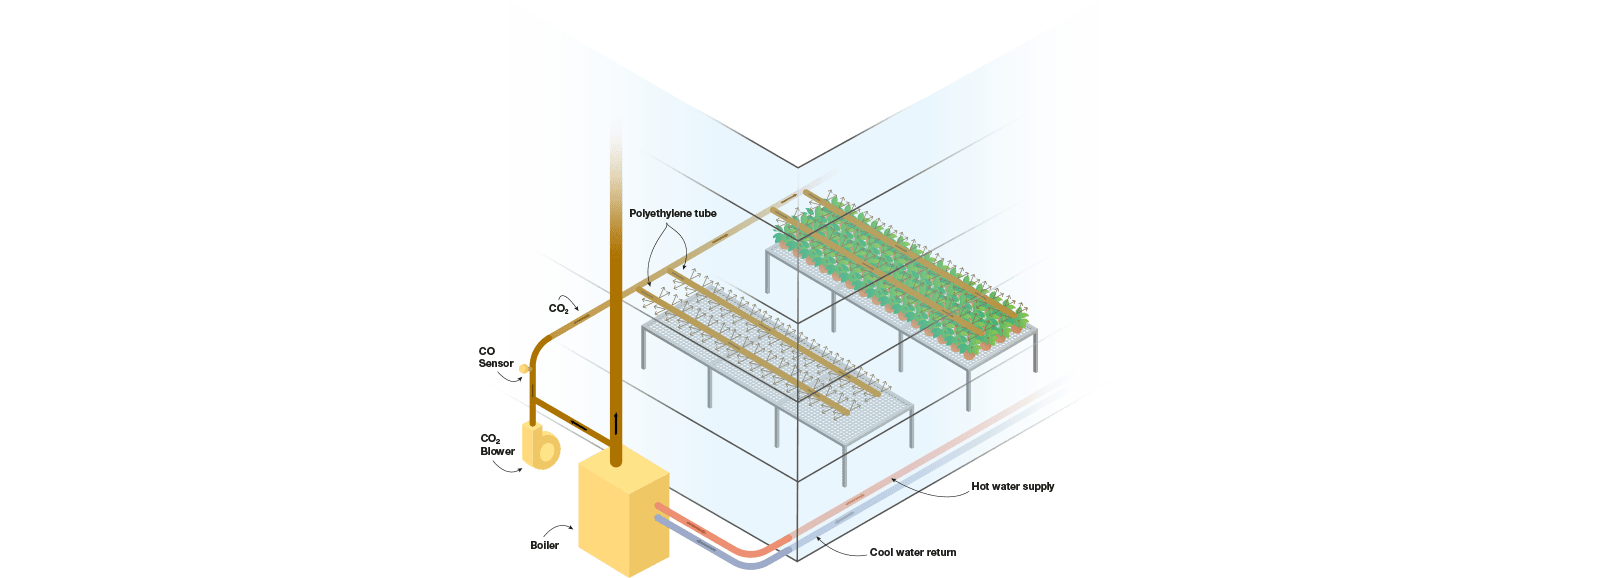 Principio de distribución del CO2 en un invernadero - Esquema